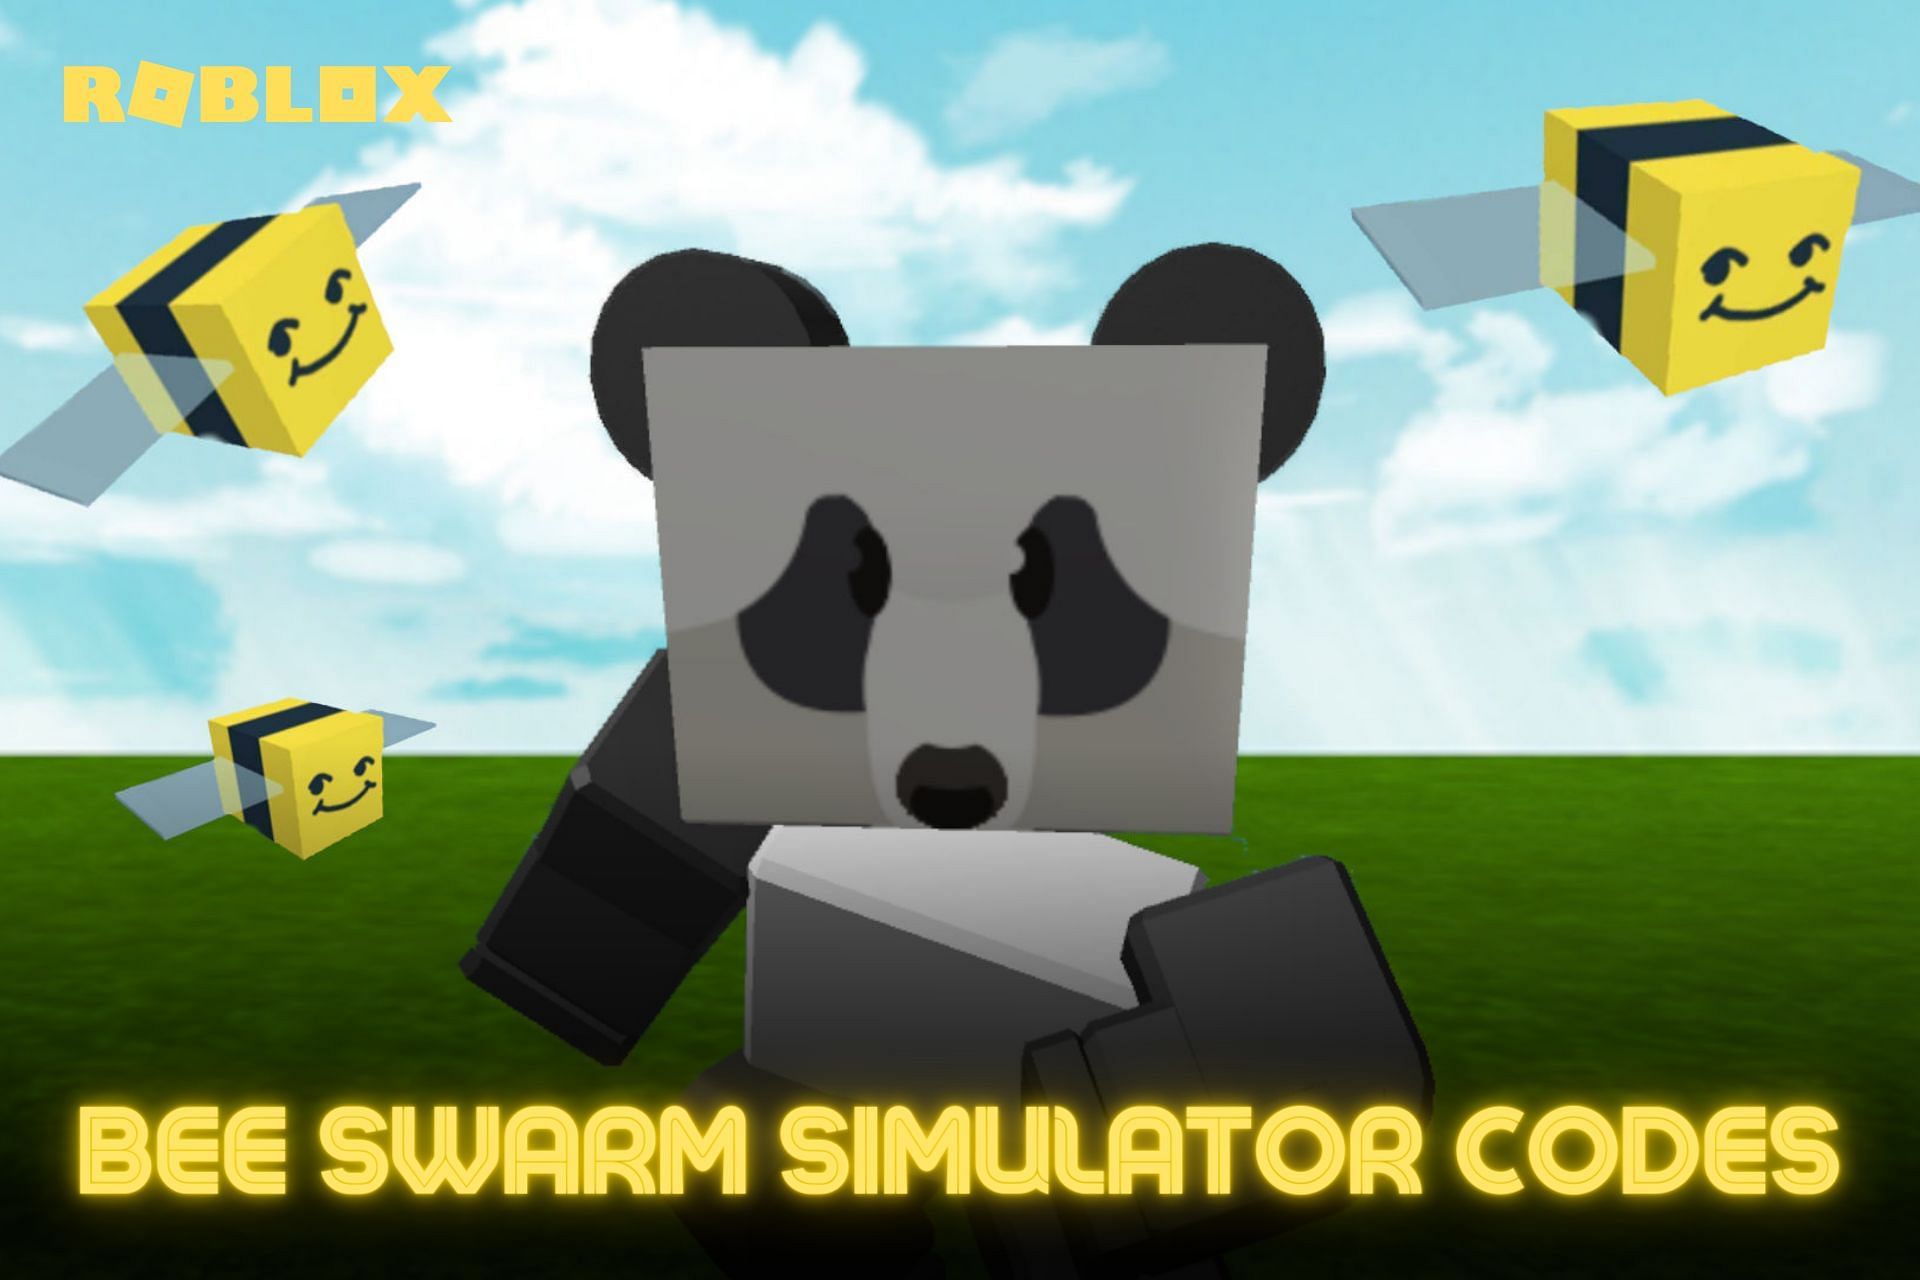 All Roblox Bee Swarm Simulator Codes (May 2022)